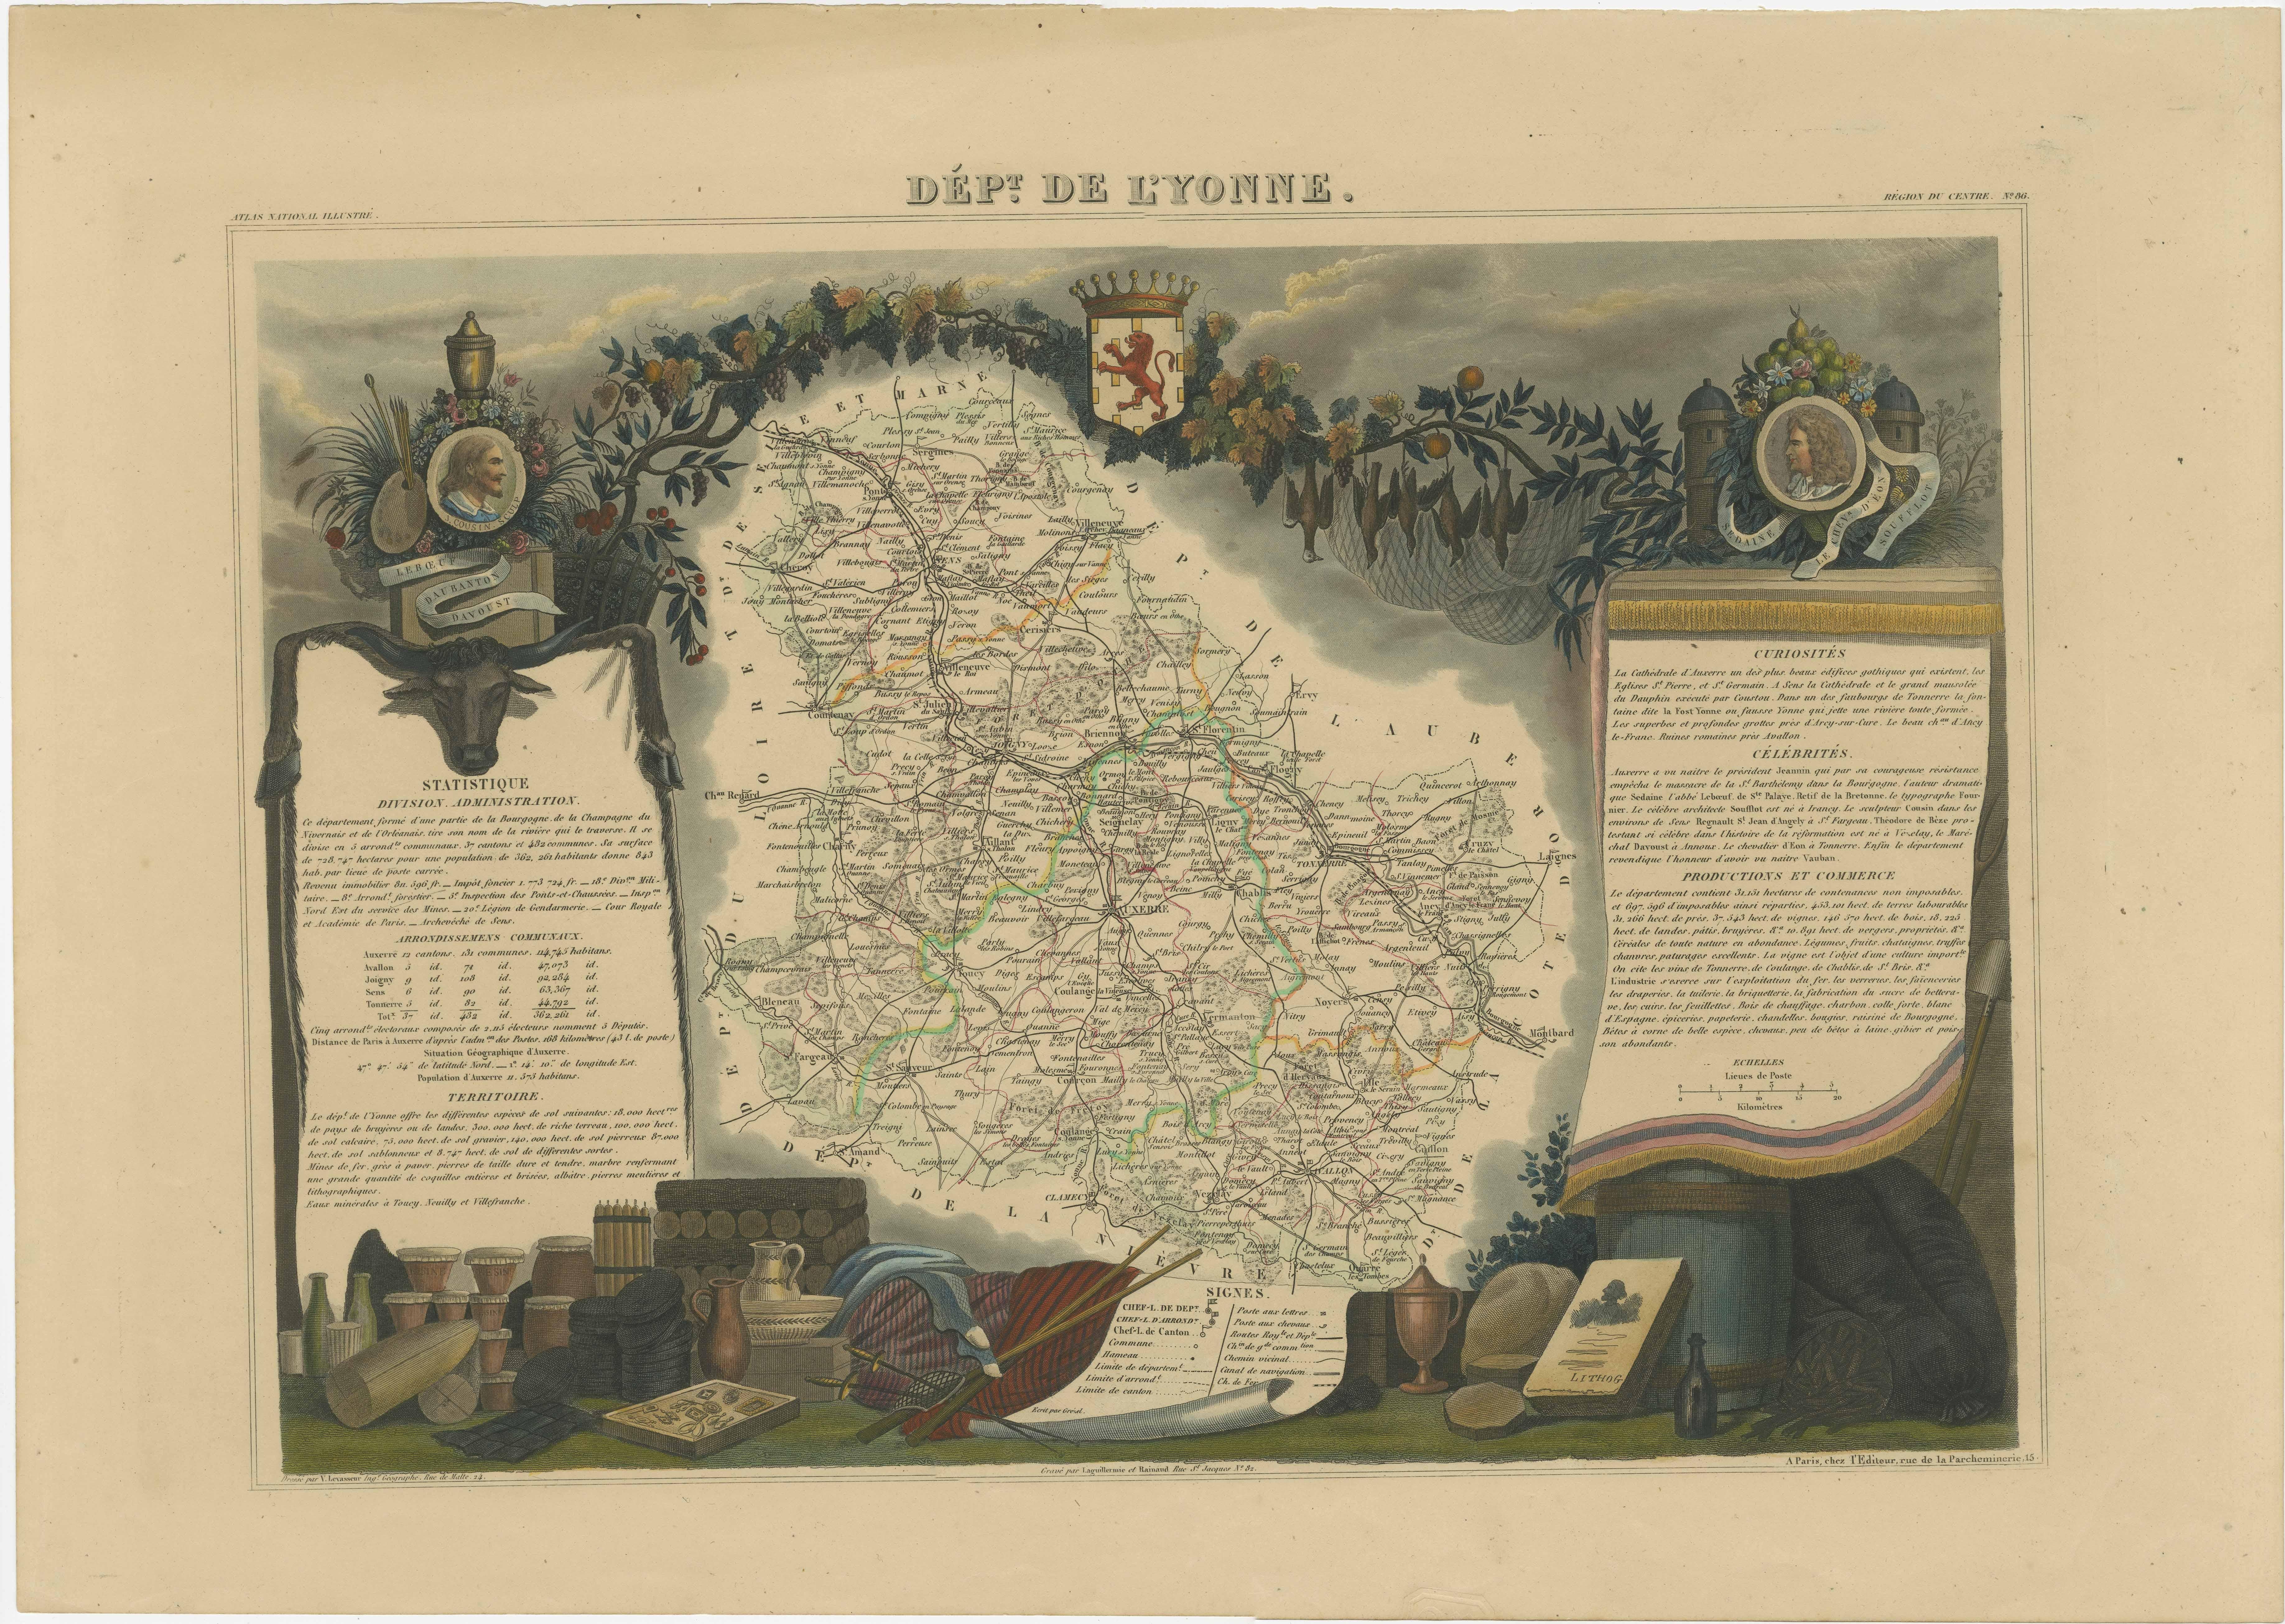 Antike Karte mit dem Titel 'Dept. de l'Yonne'. Karte des französischen Departements L'Yonne, Frankreich. L'Yonne gehört zu Frankreichs wichtigstem Weinbaugebiet Burgund und produziert einige der besten Rotweine der Welt. Die Yonne ist auch eines von